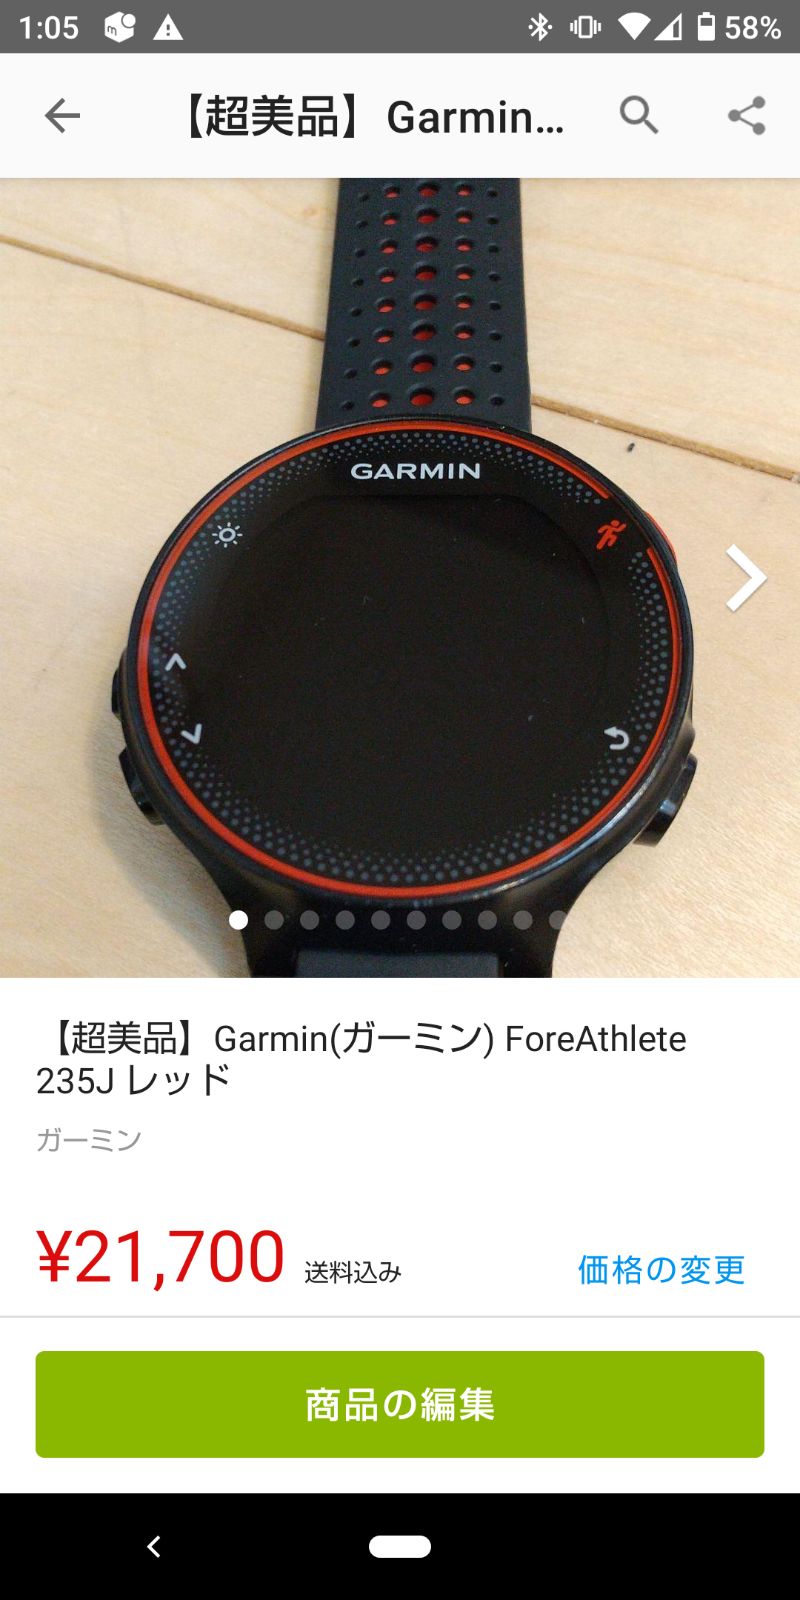 新品未使用】Garmin(ガーミン) ForeAthlete 235j レッド - ランニング